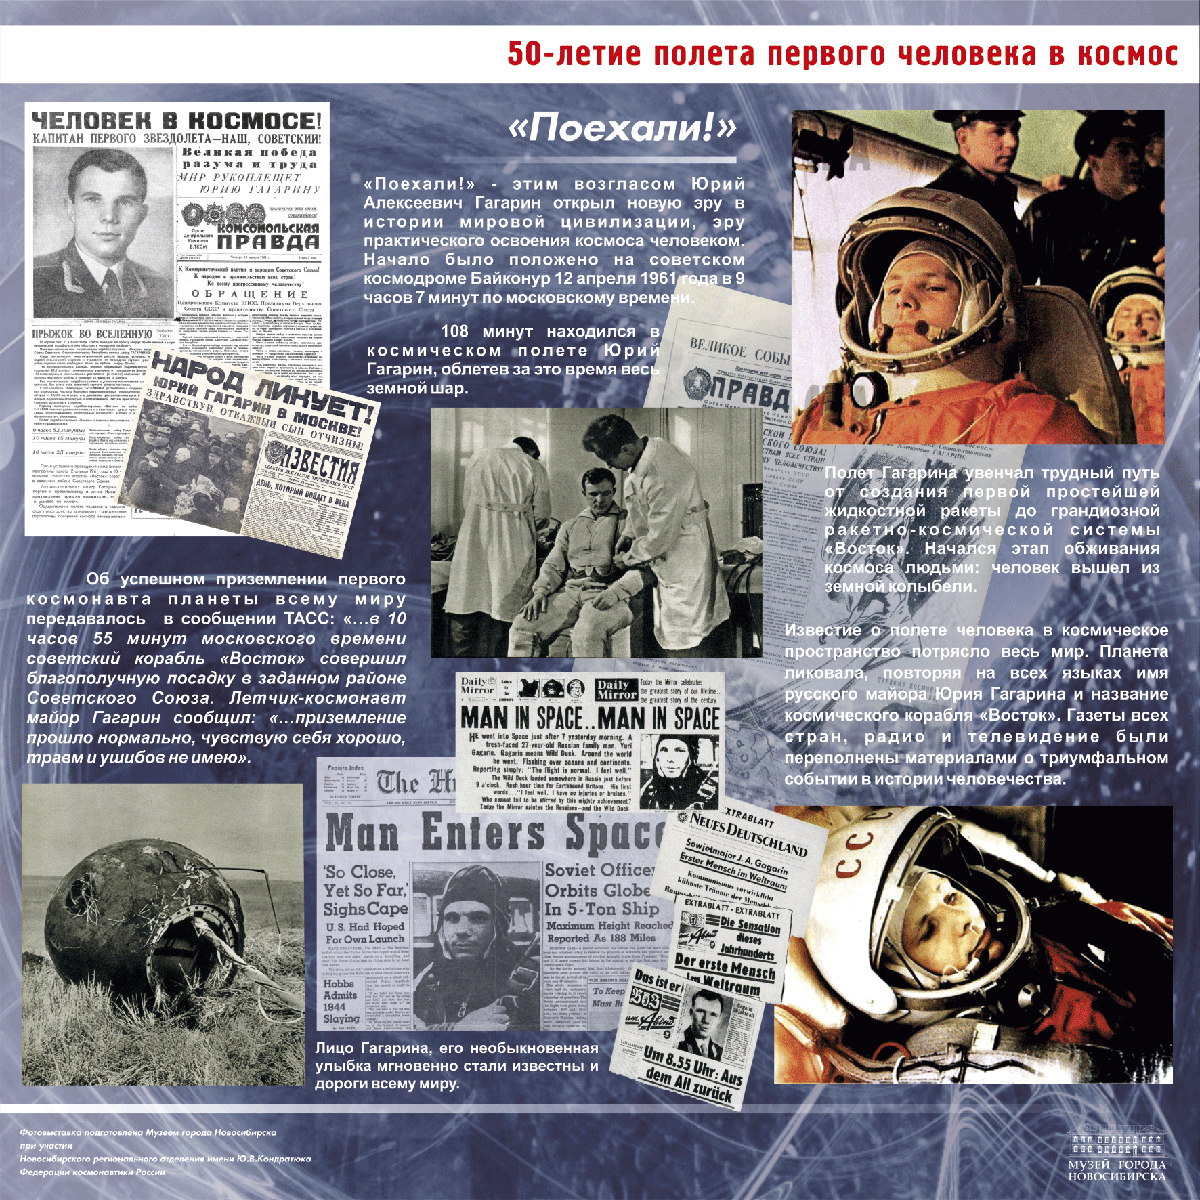 90 лет гагарину когда. 1961 Первый полет человека в космос. Полет Гагарина в космос 12 апреля 1961. 60 Летие полета Гагарина в космос.